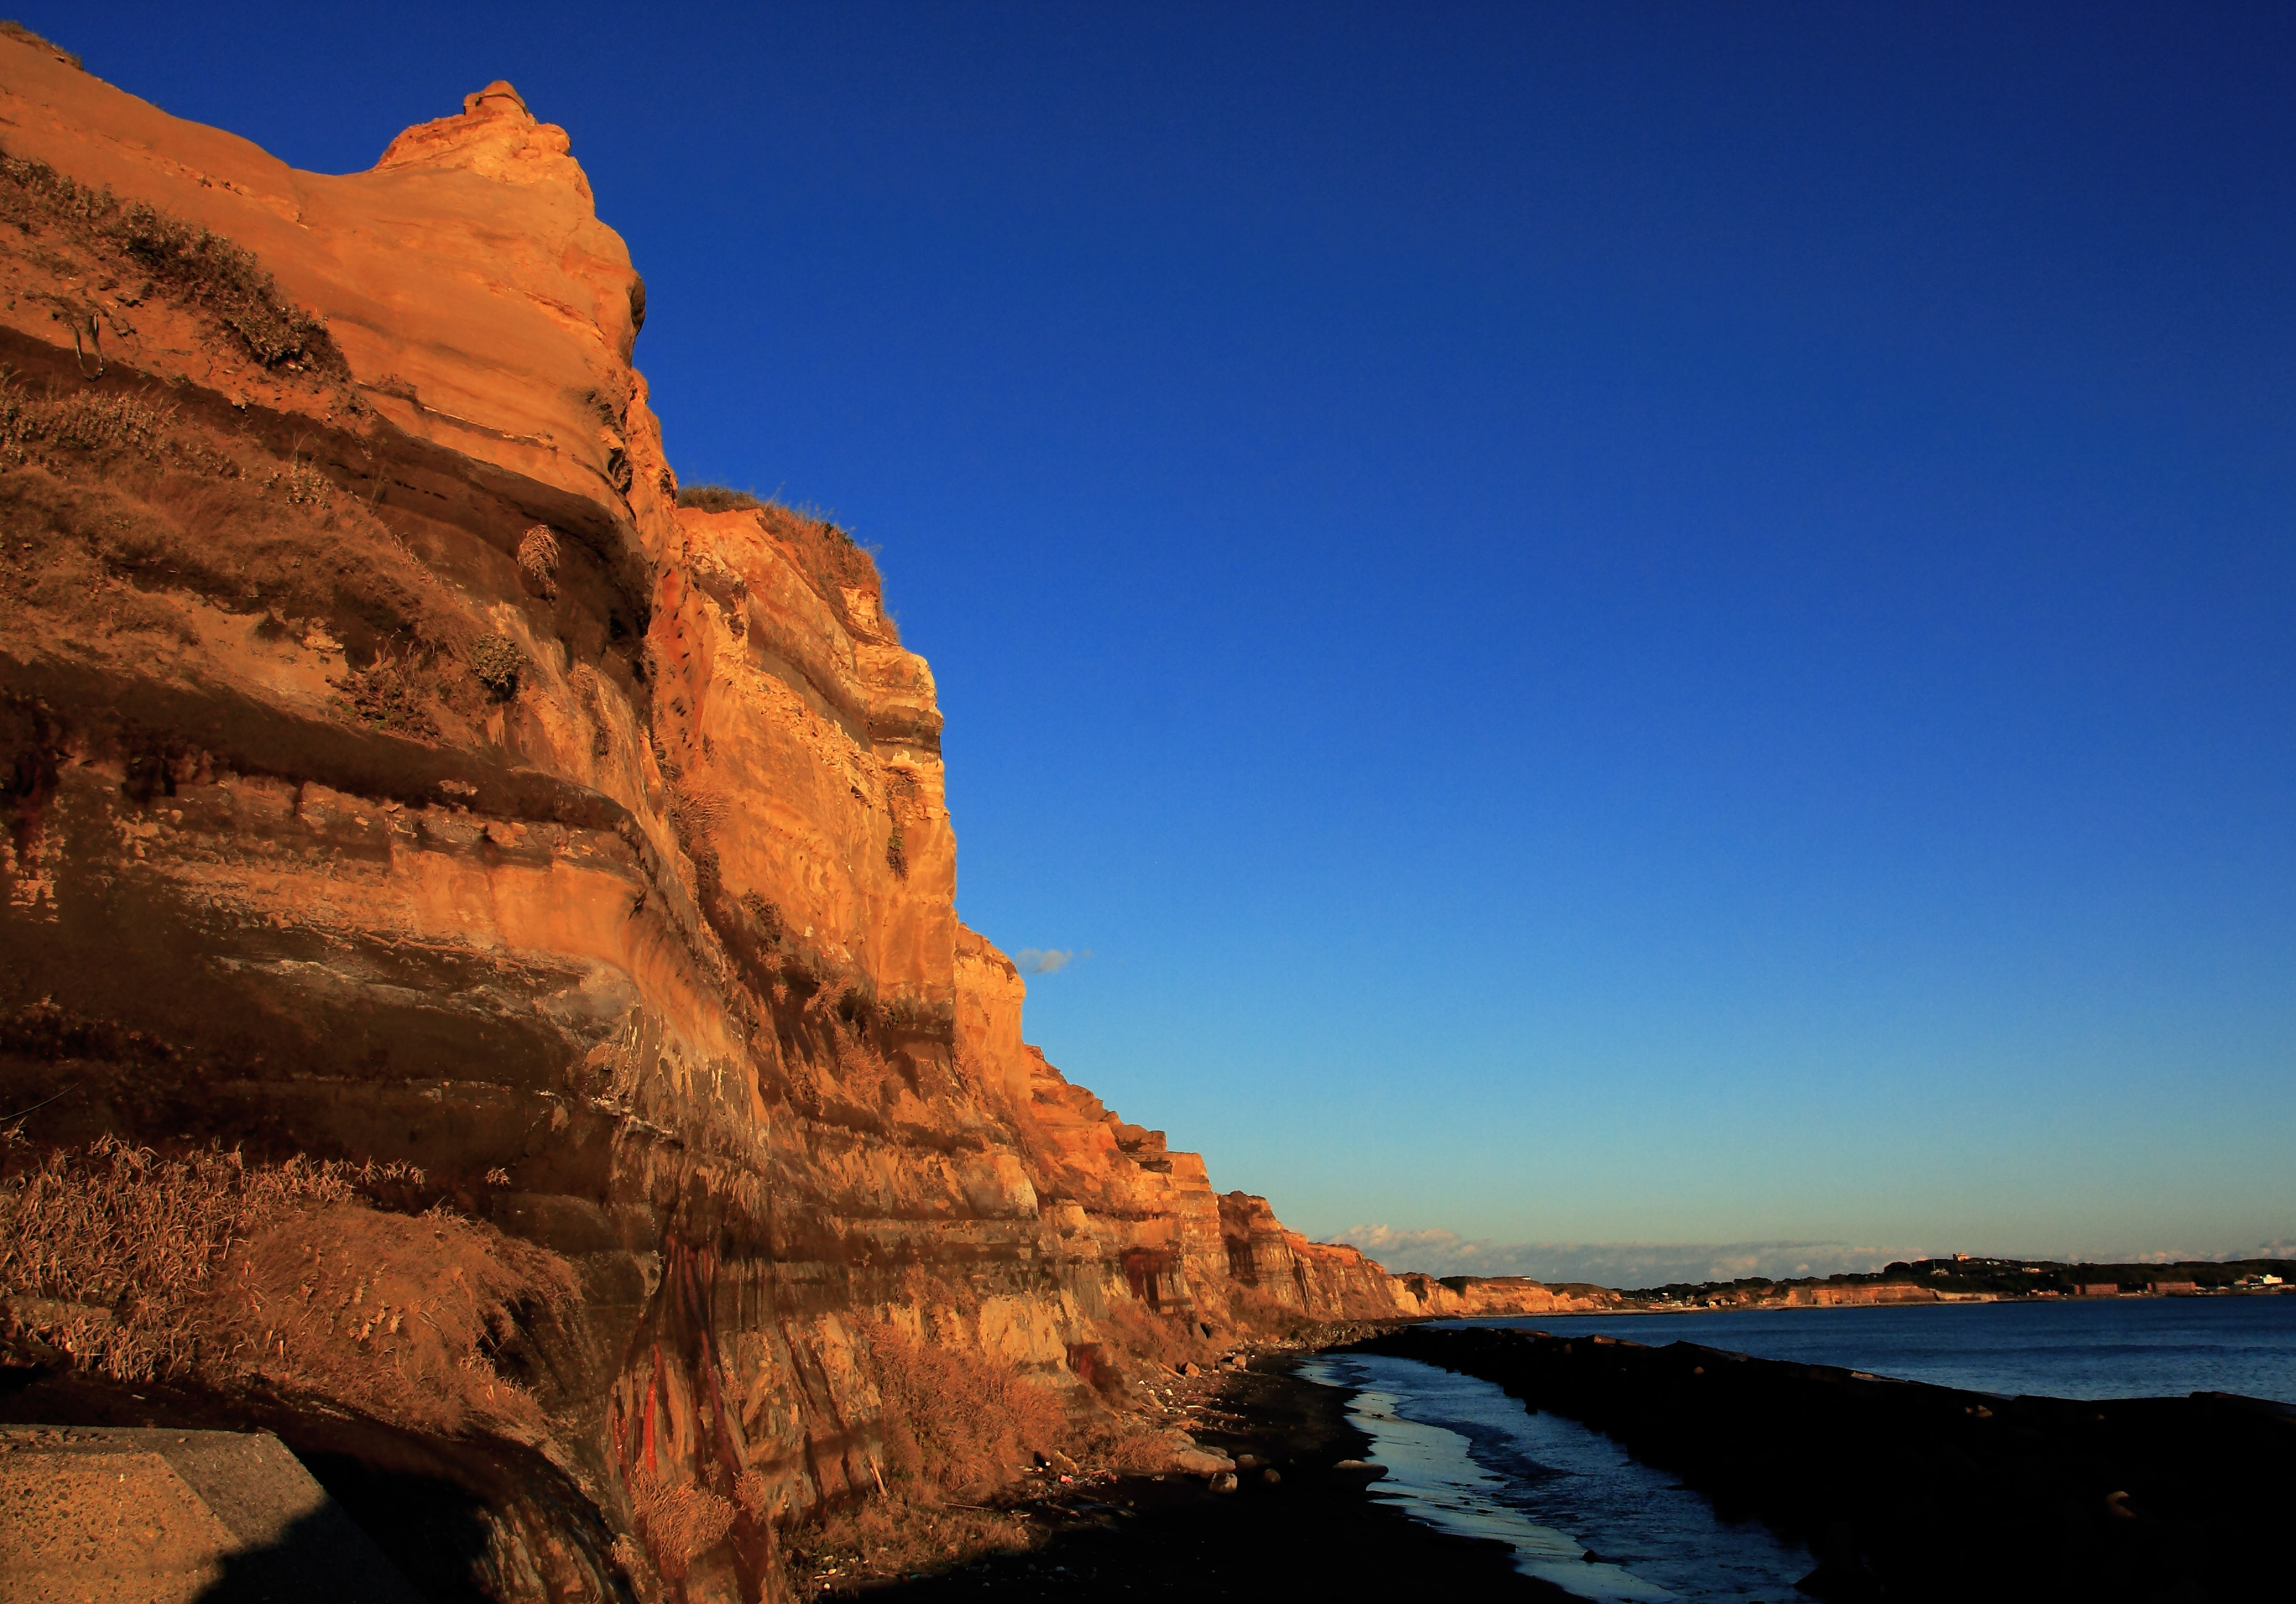 Sea Cliff at Byobugaura